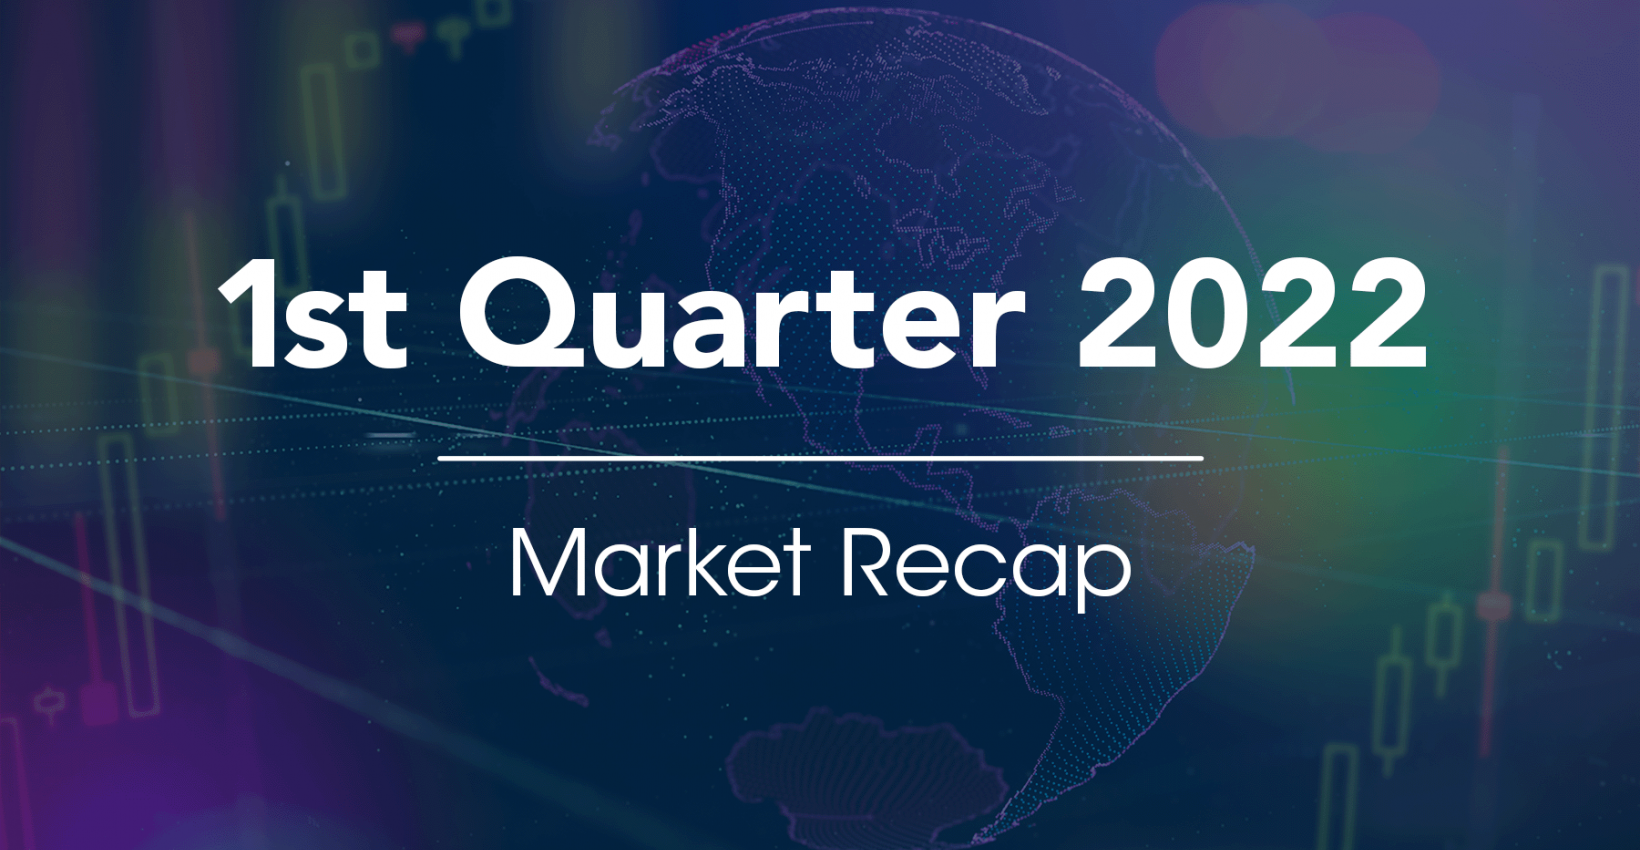 1st Quarter 2022 Market Recap